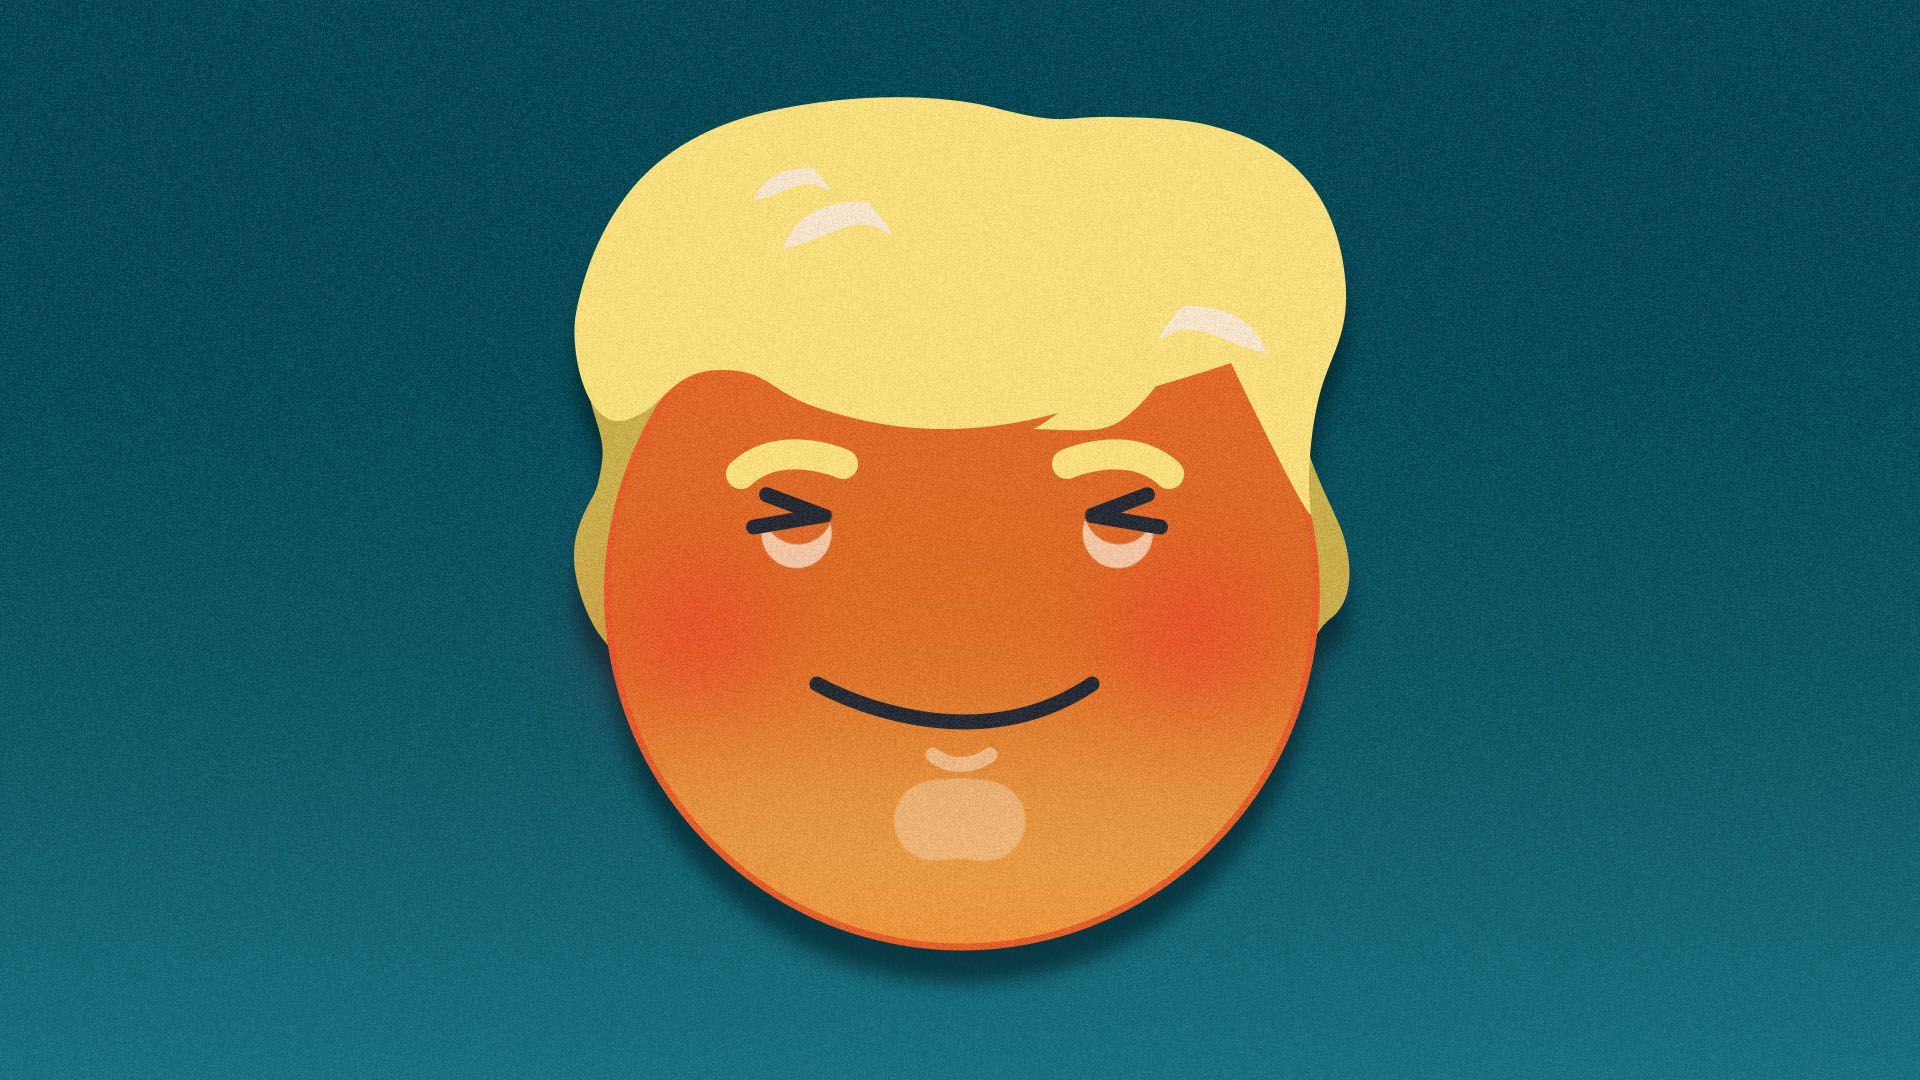 Illustration of a happy Facebook emoji that resembles Donald Trump